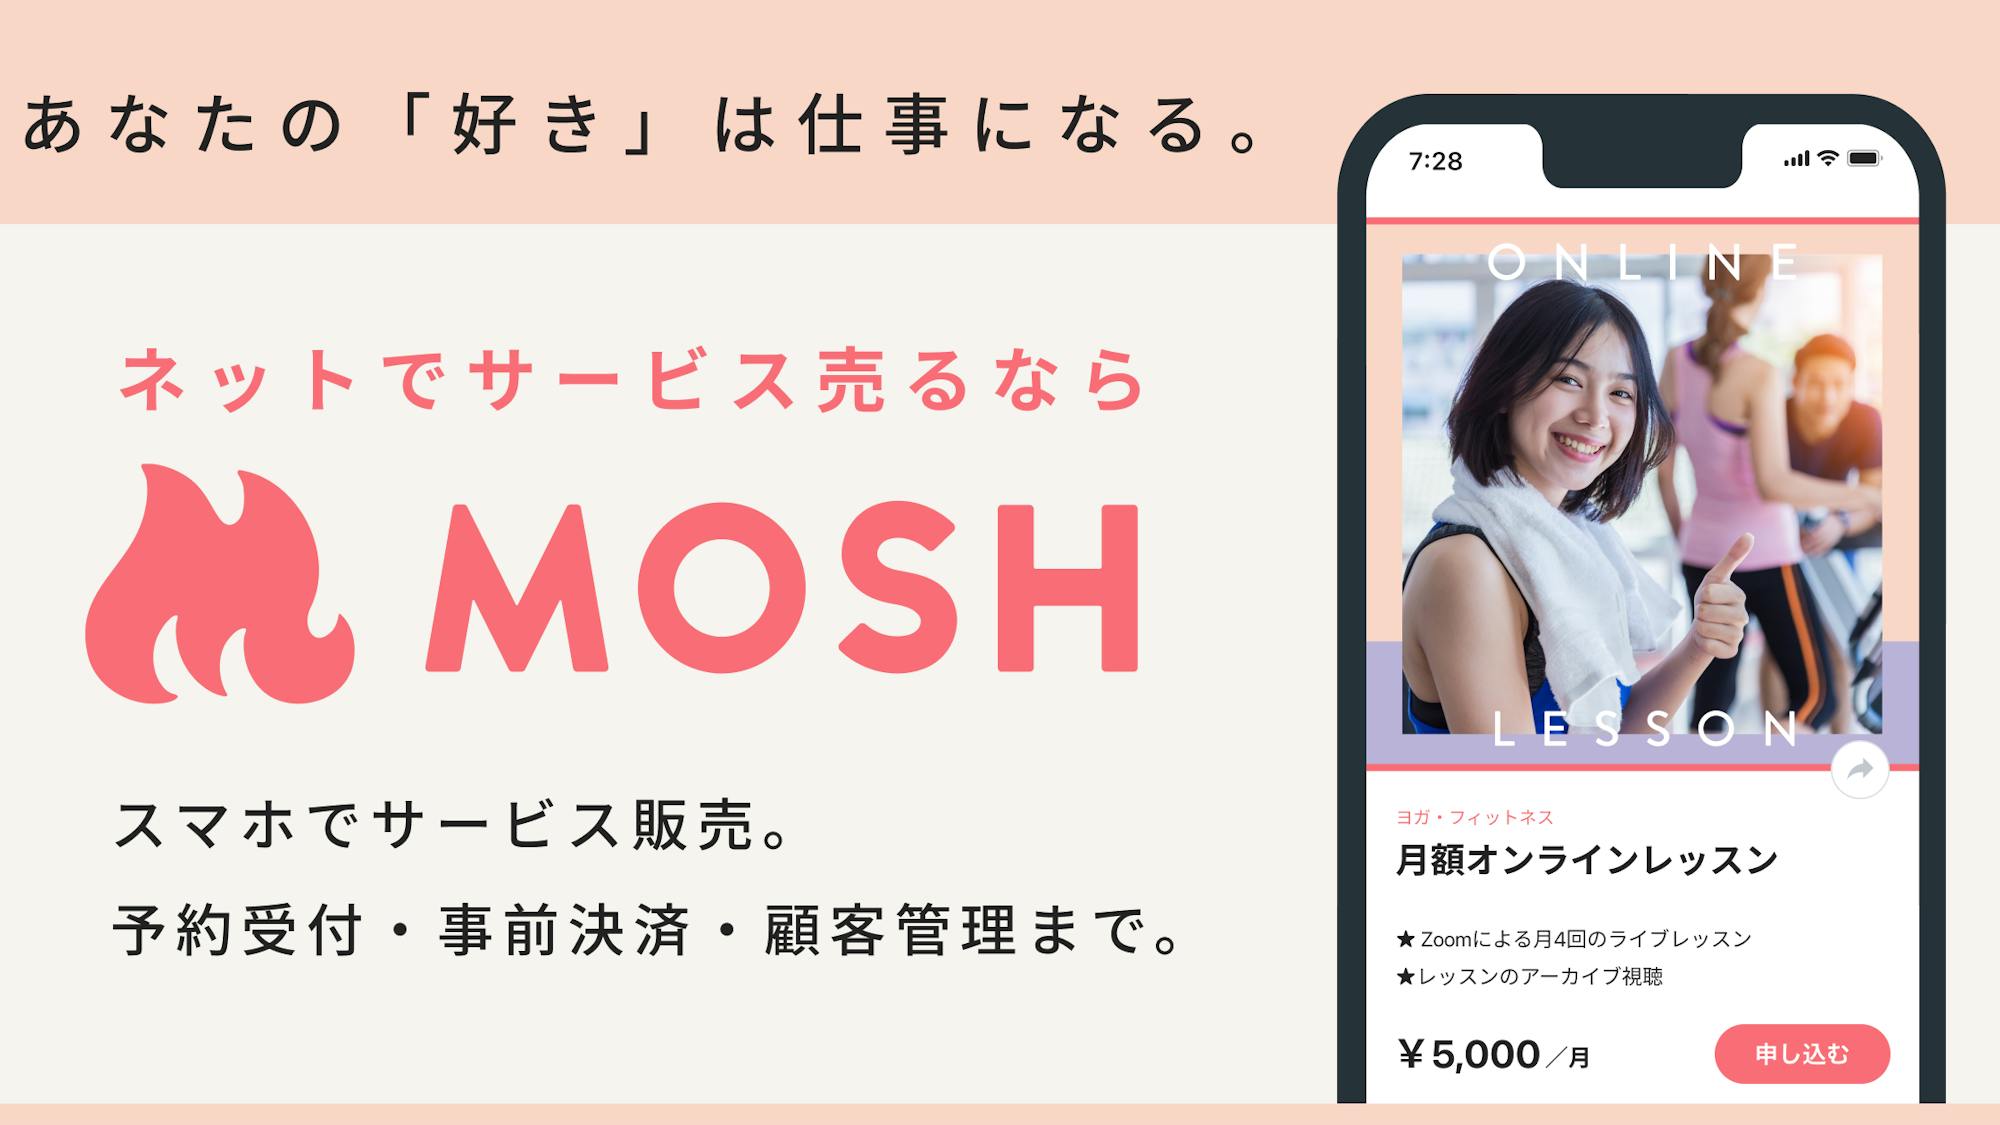 オンラインサービス販売プラットフォーム運営のMOSHが8億円の資金調達、クリエイターエコノミーのさらなる活性化を支援